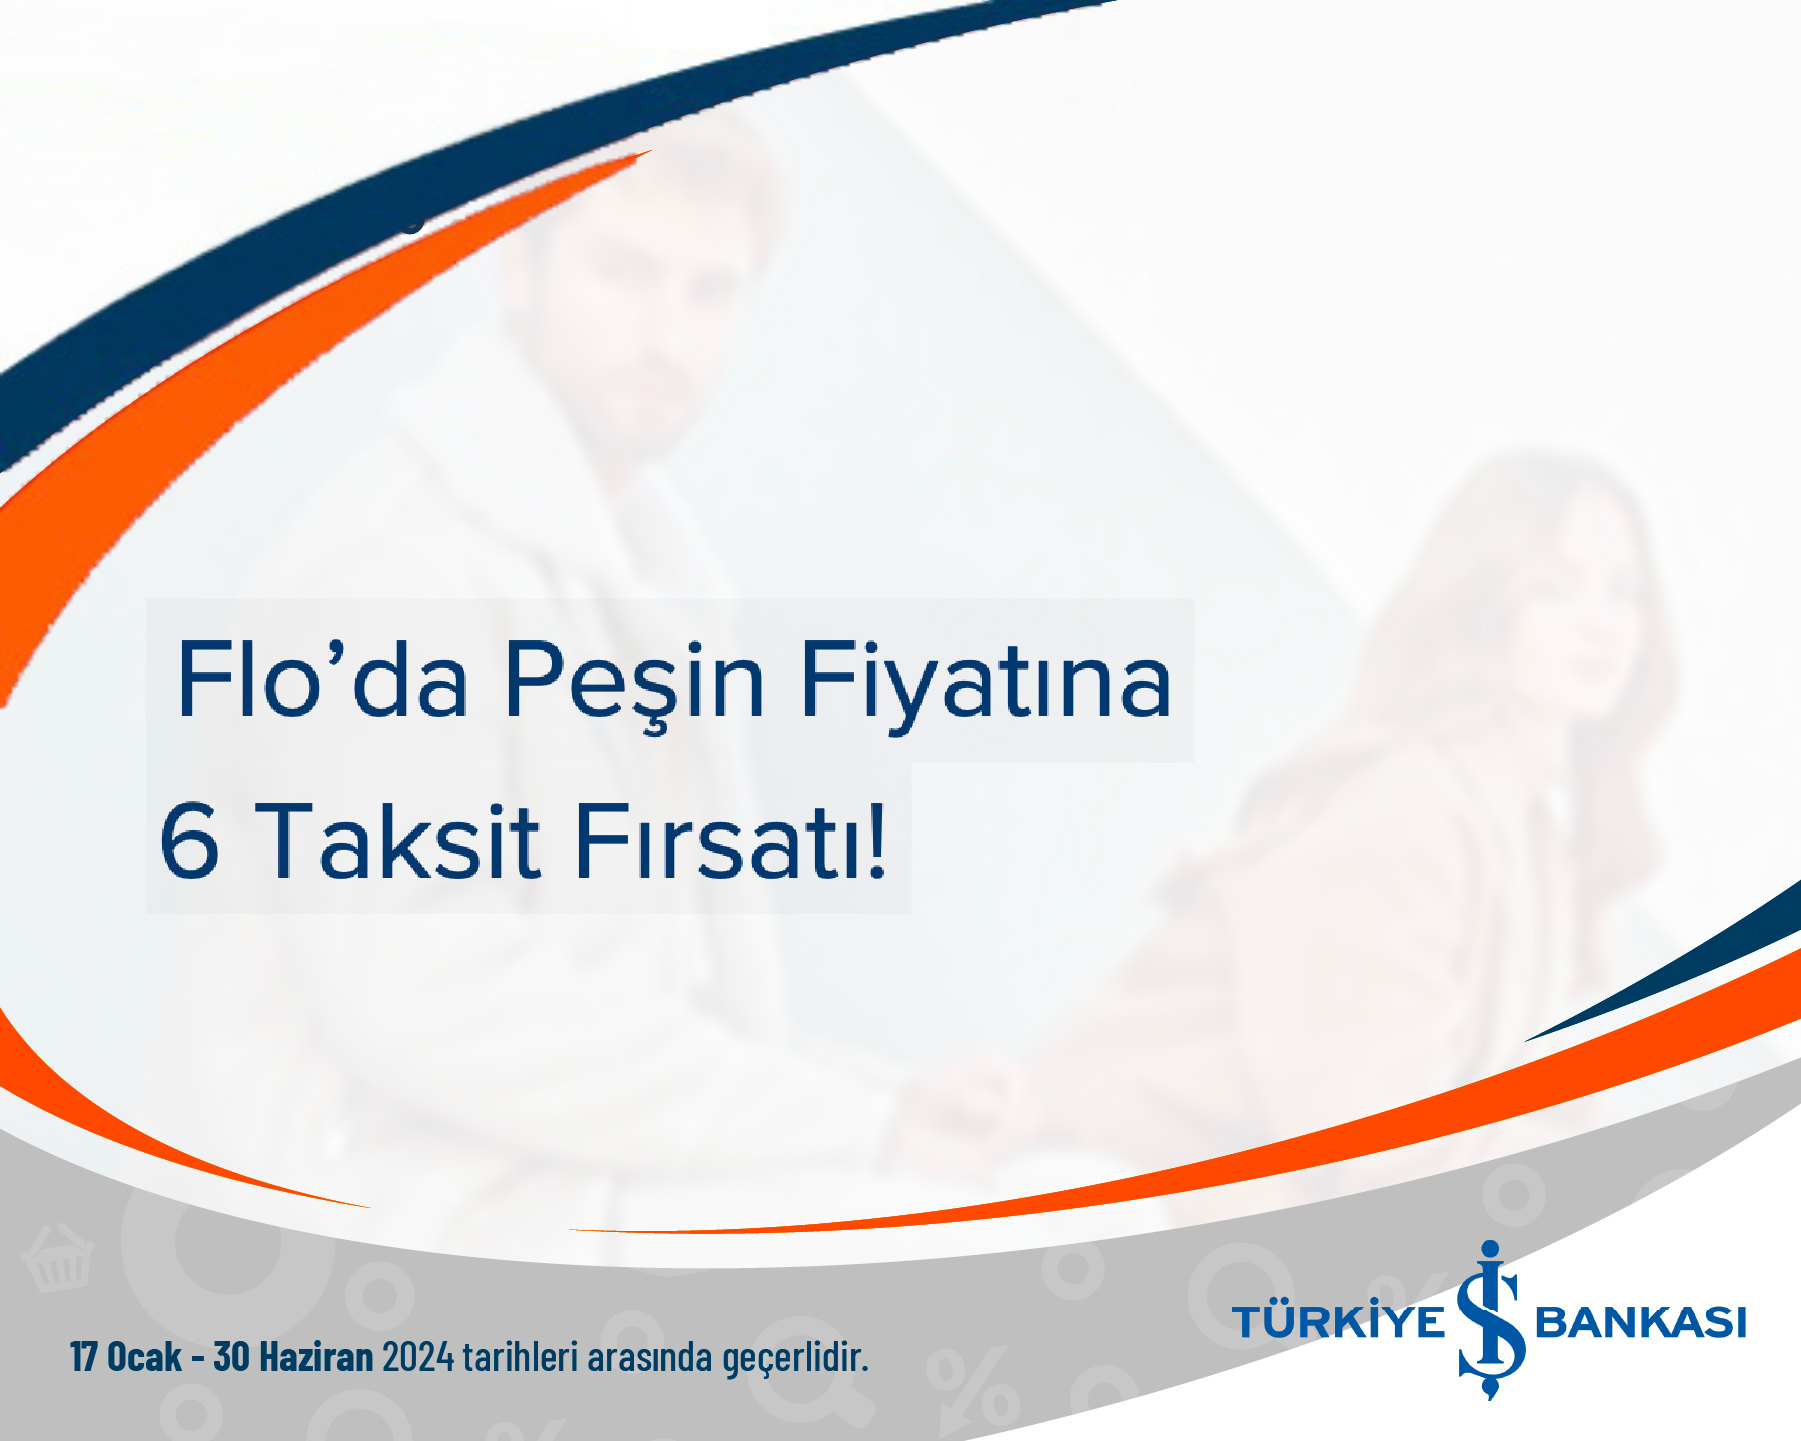 Türkiye İş Bankası Flo’da Peşin Fiyatına 6 Taksit Fırsatı!